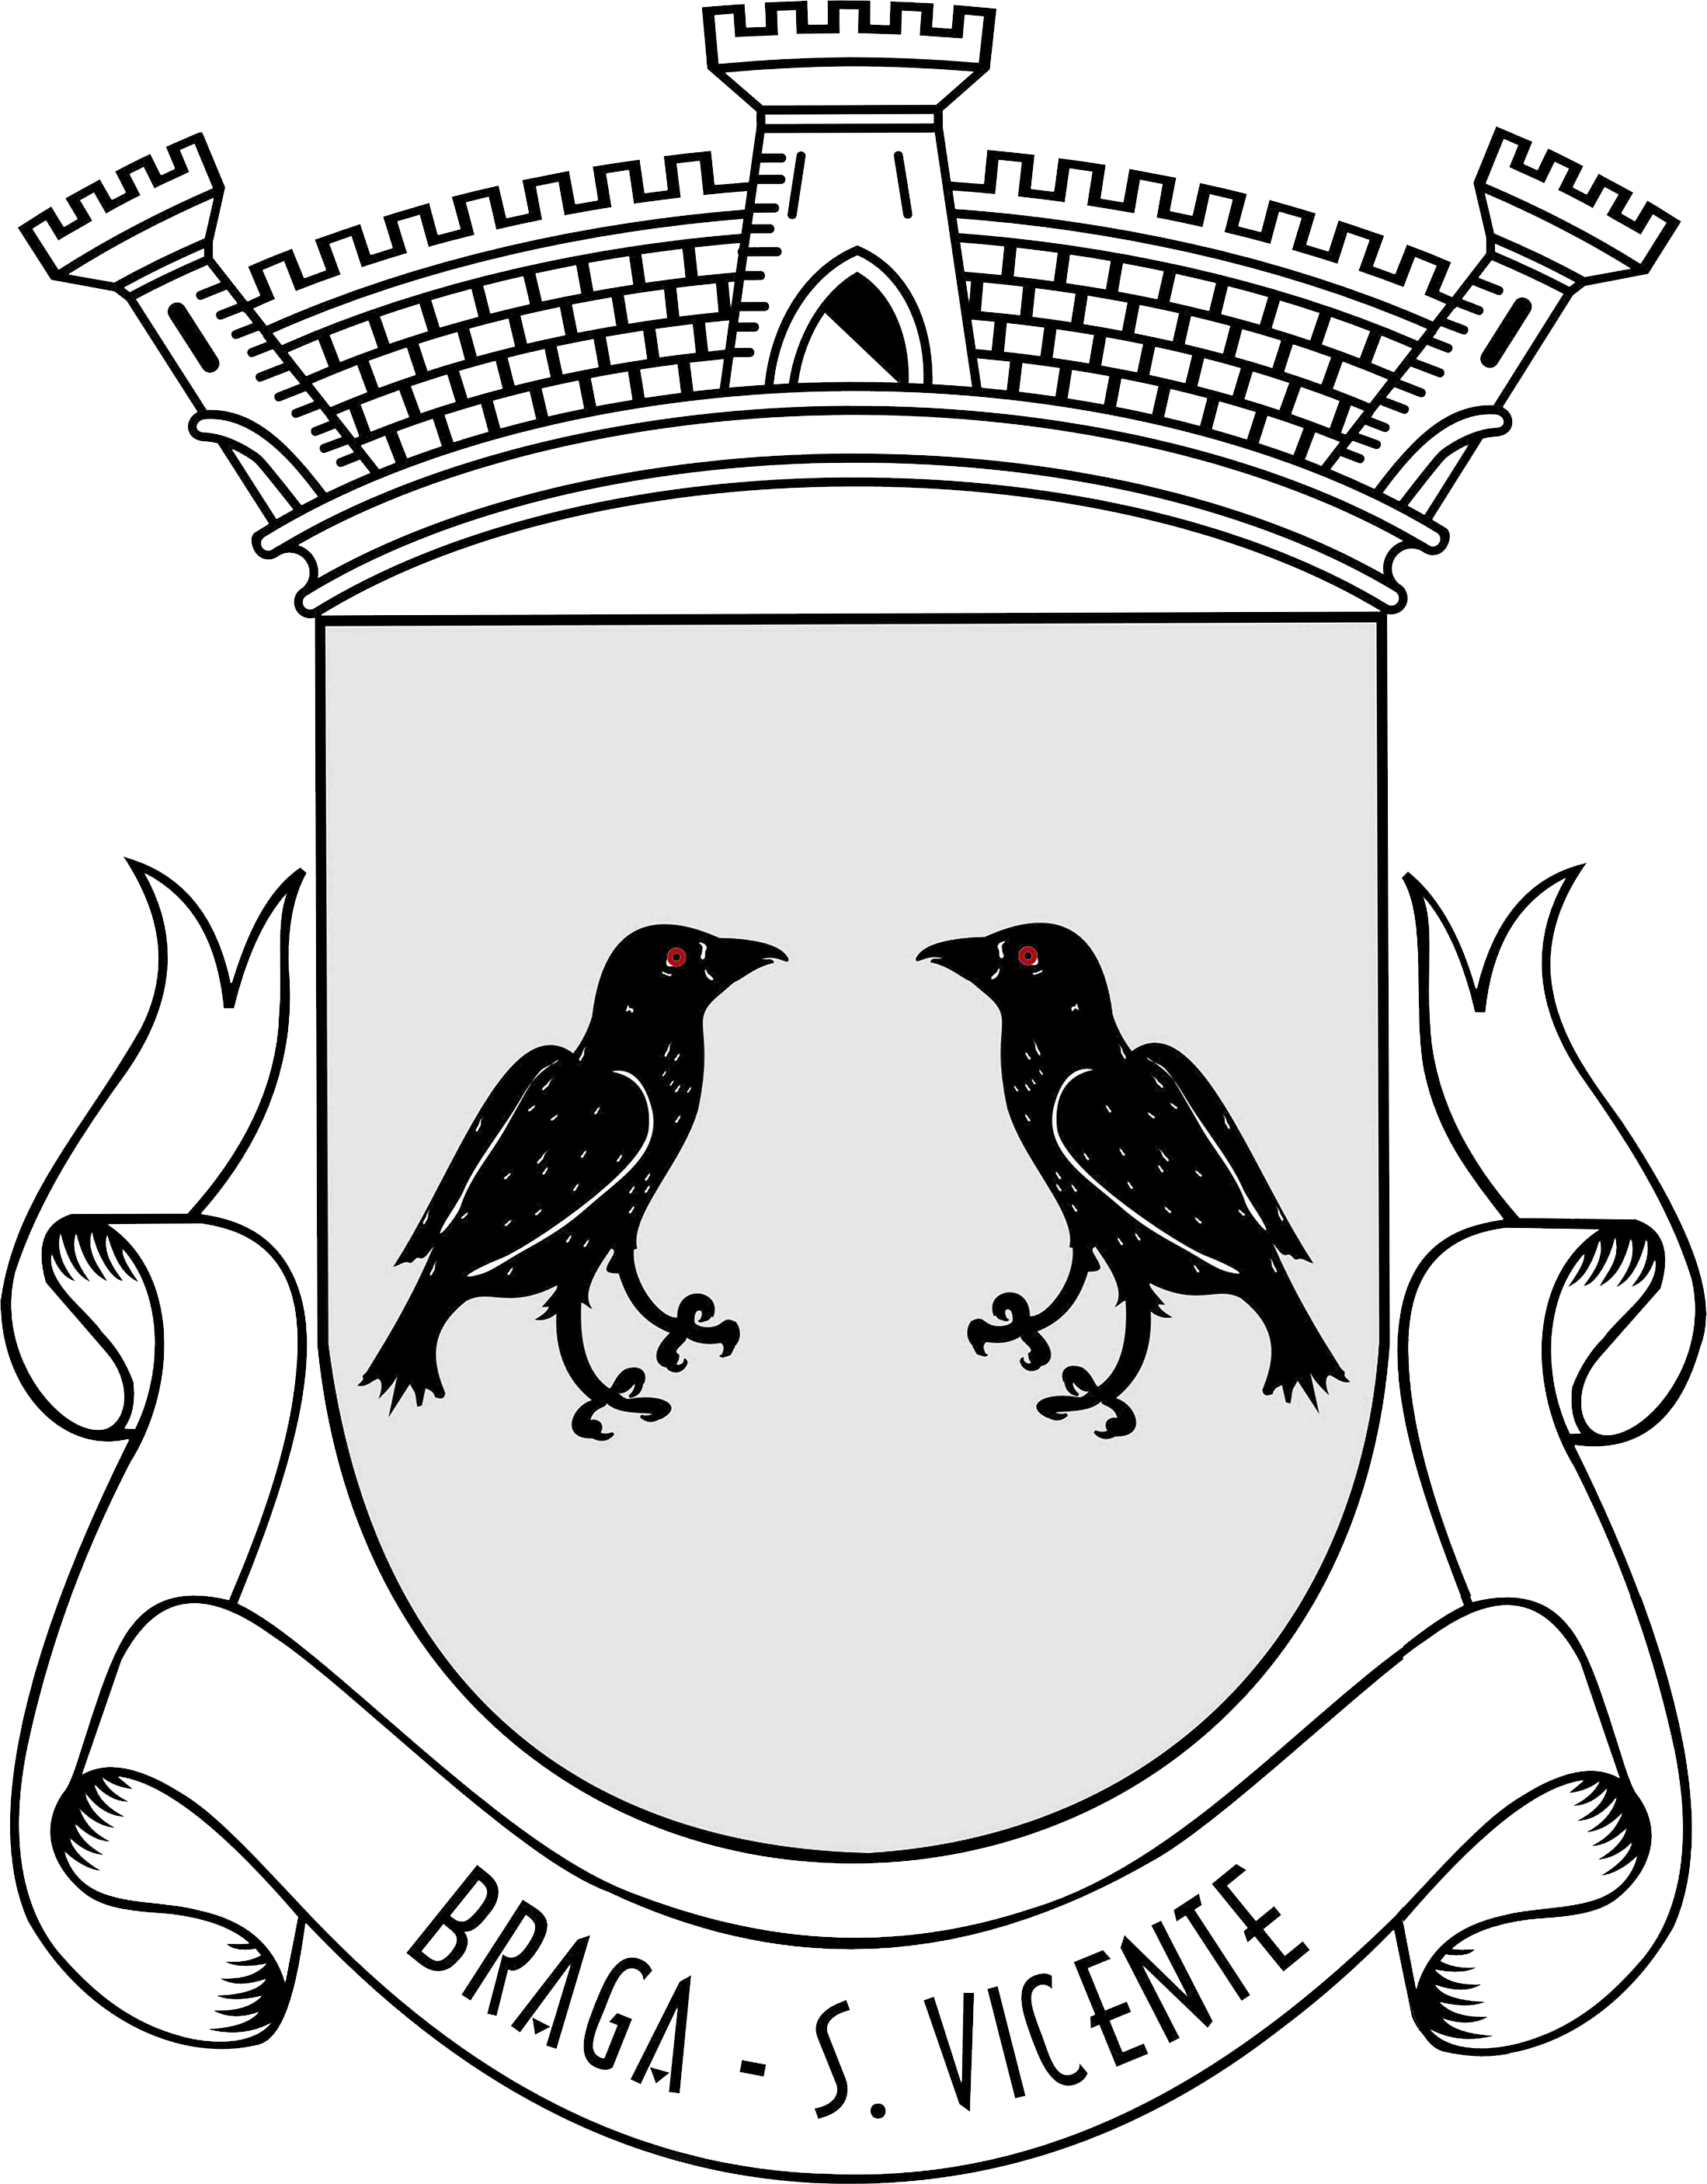 Junta de Freguesia de São Vicente